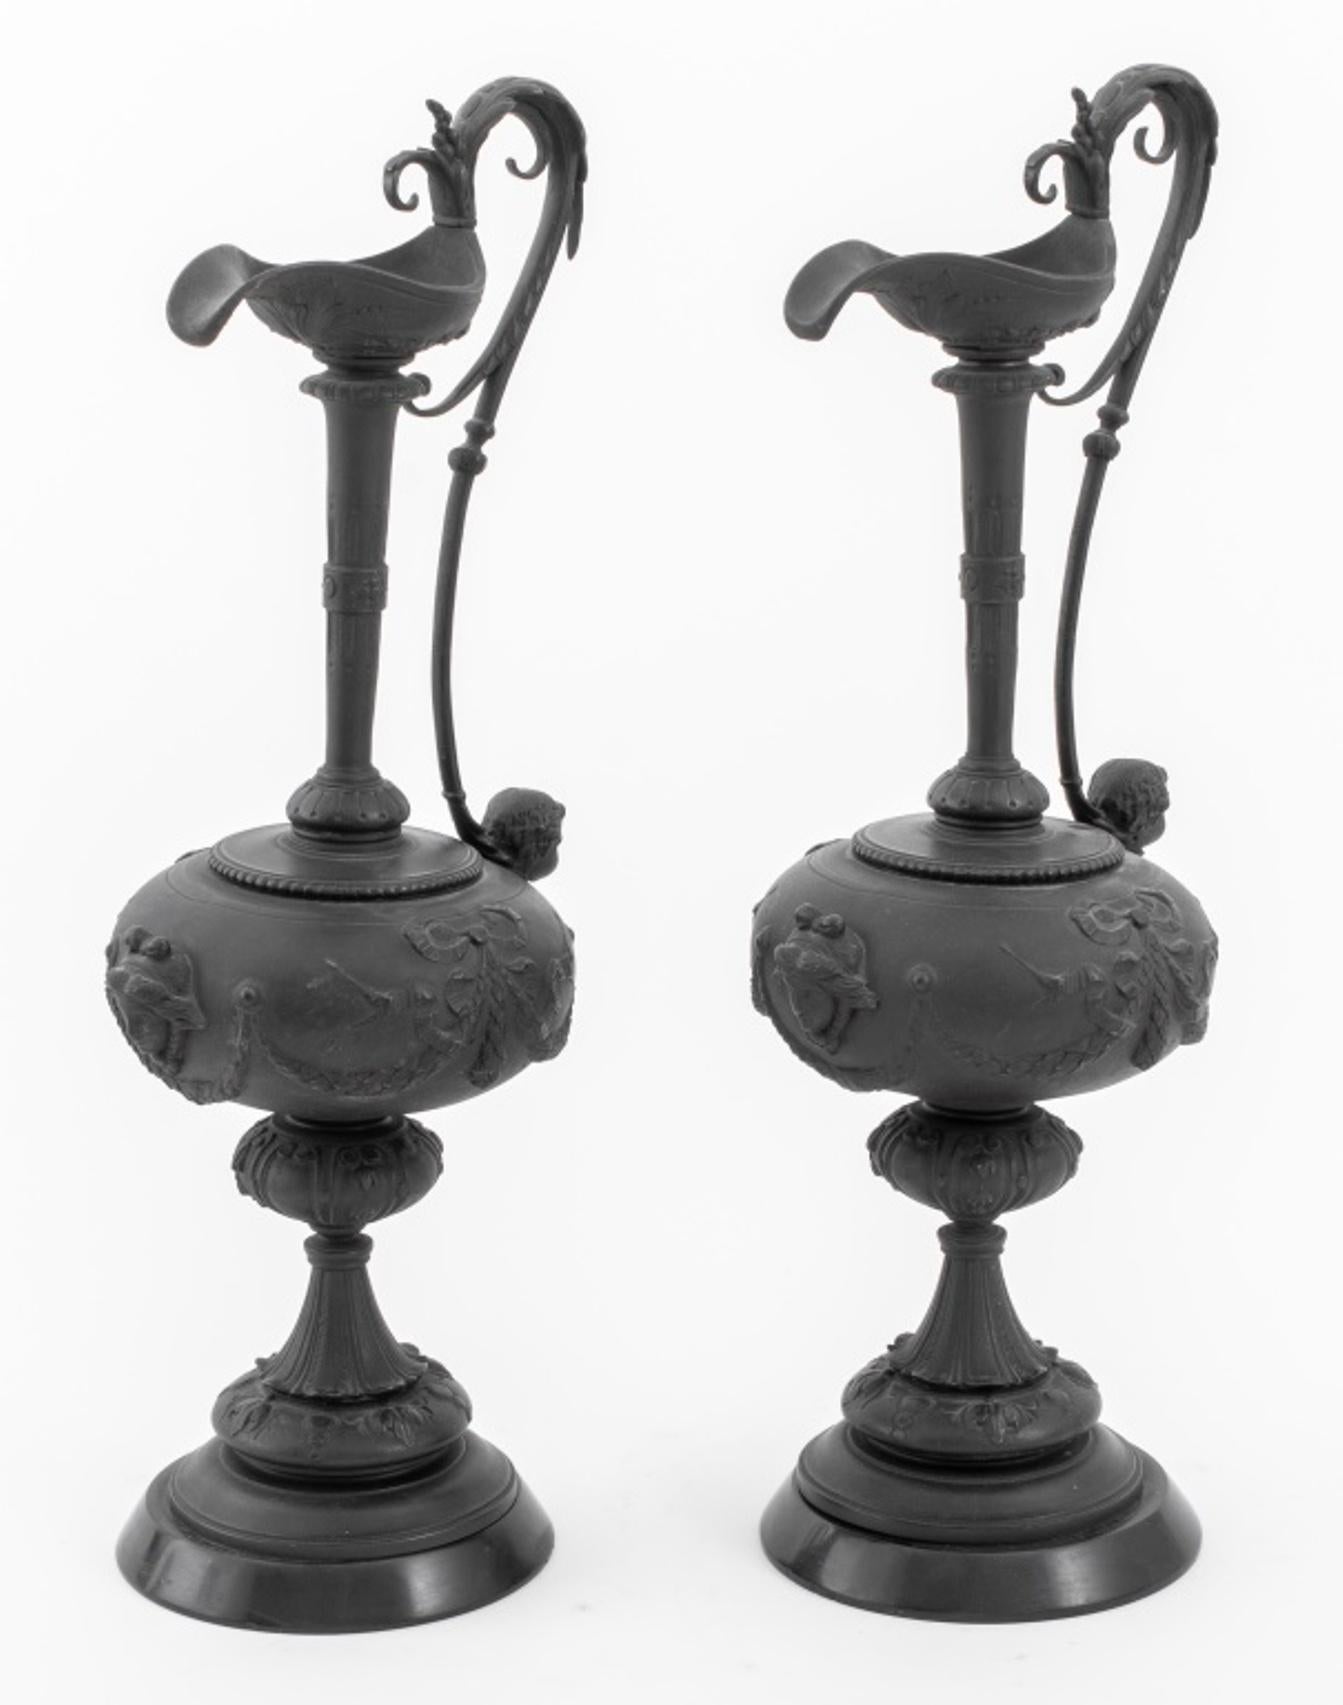 Ein Paar patinierte Bronzeskulpturen in Form von Kannen mit klassizistischem Dekor aus Blattwerk, Schleifen, Puttenbüsten unter den Griffen und Masken auf der Vorderseite, montiert auf Steinsockeln aus schwarzem Marmor.

Abmessungen: Jedes: 18,75